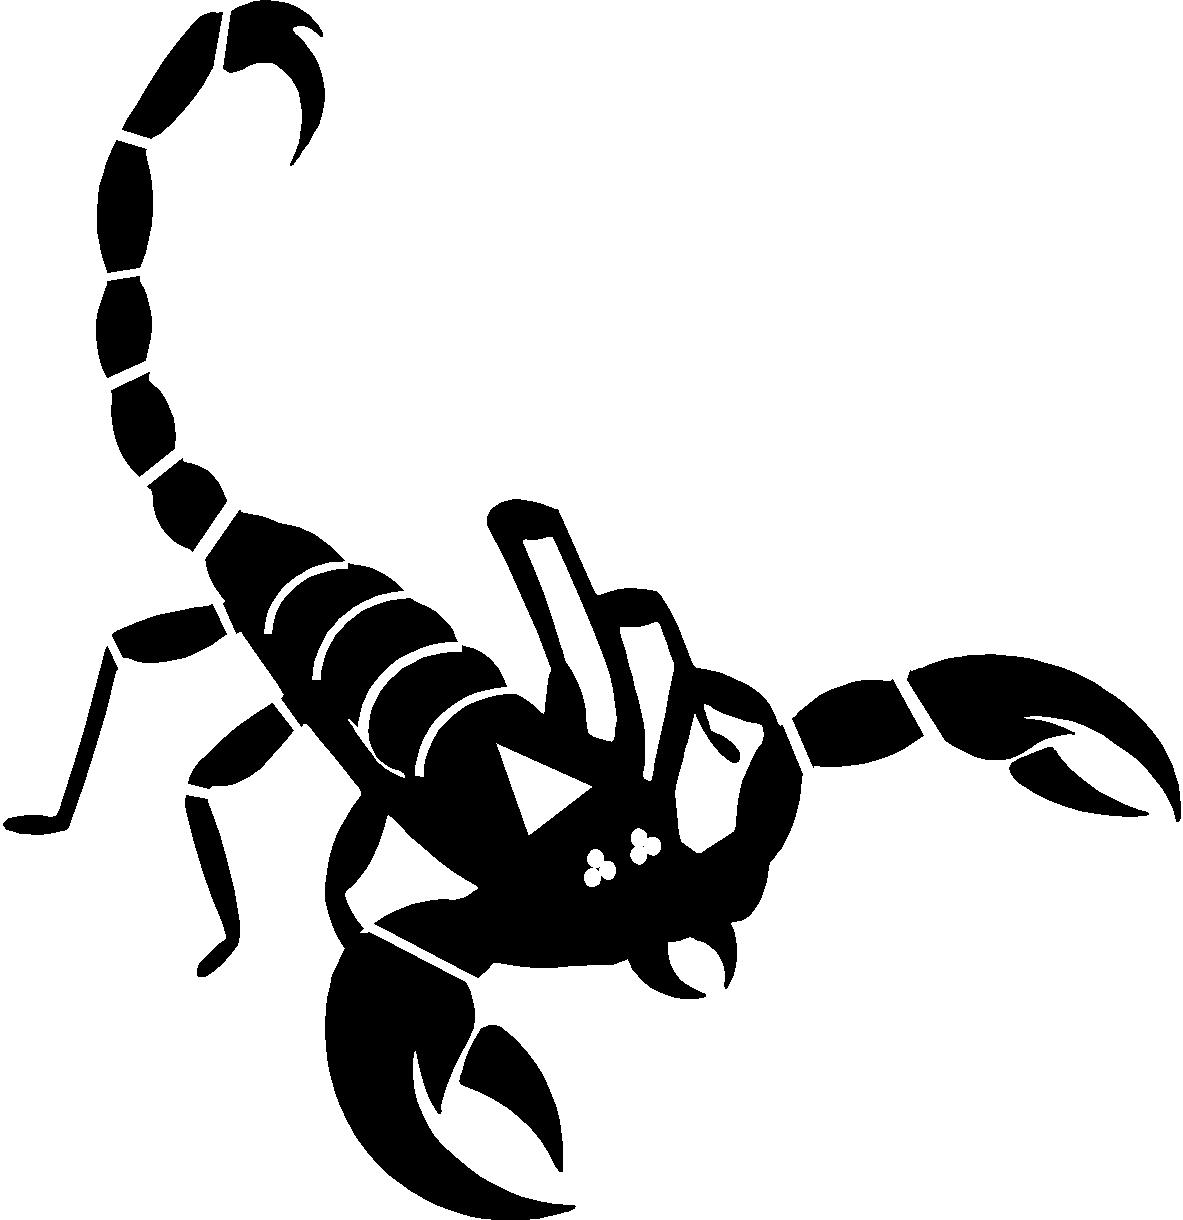 Skorpion, Insekt, Giftig, Aug